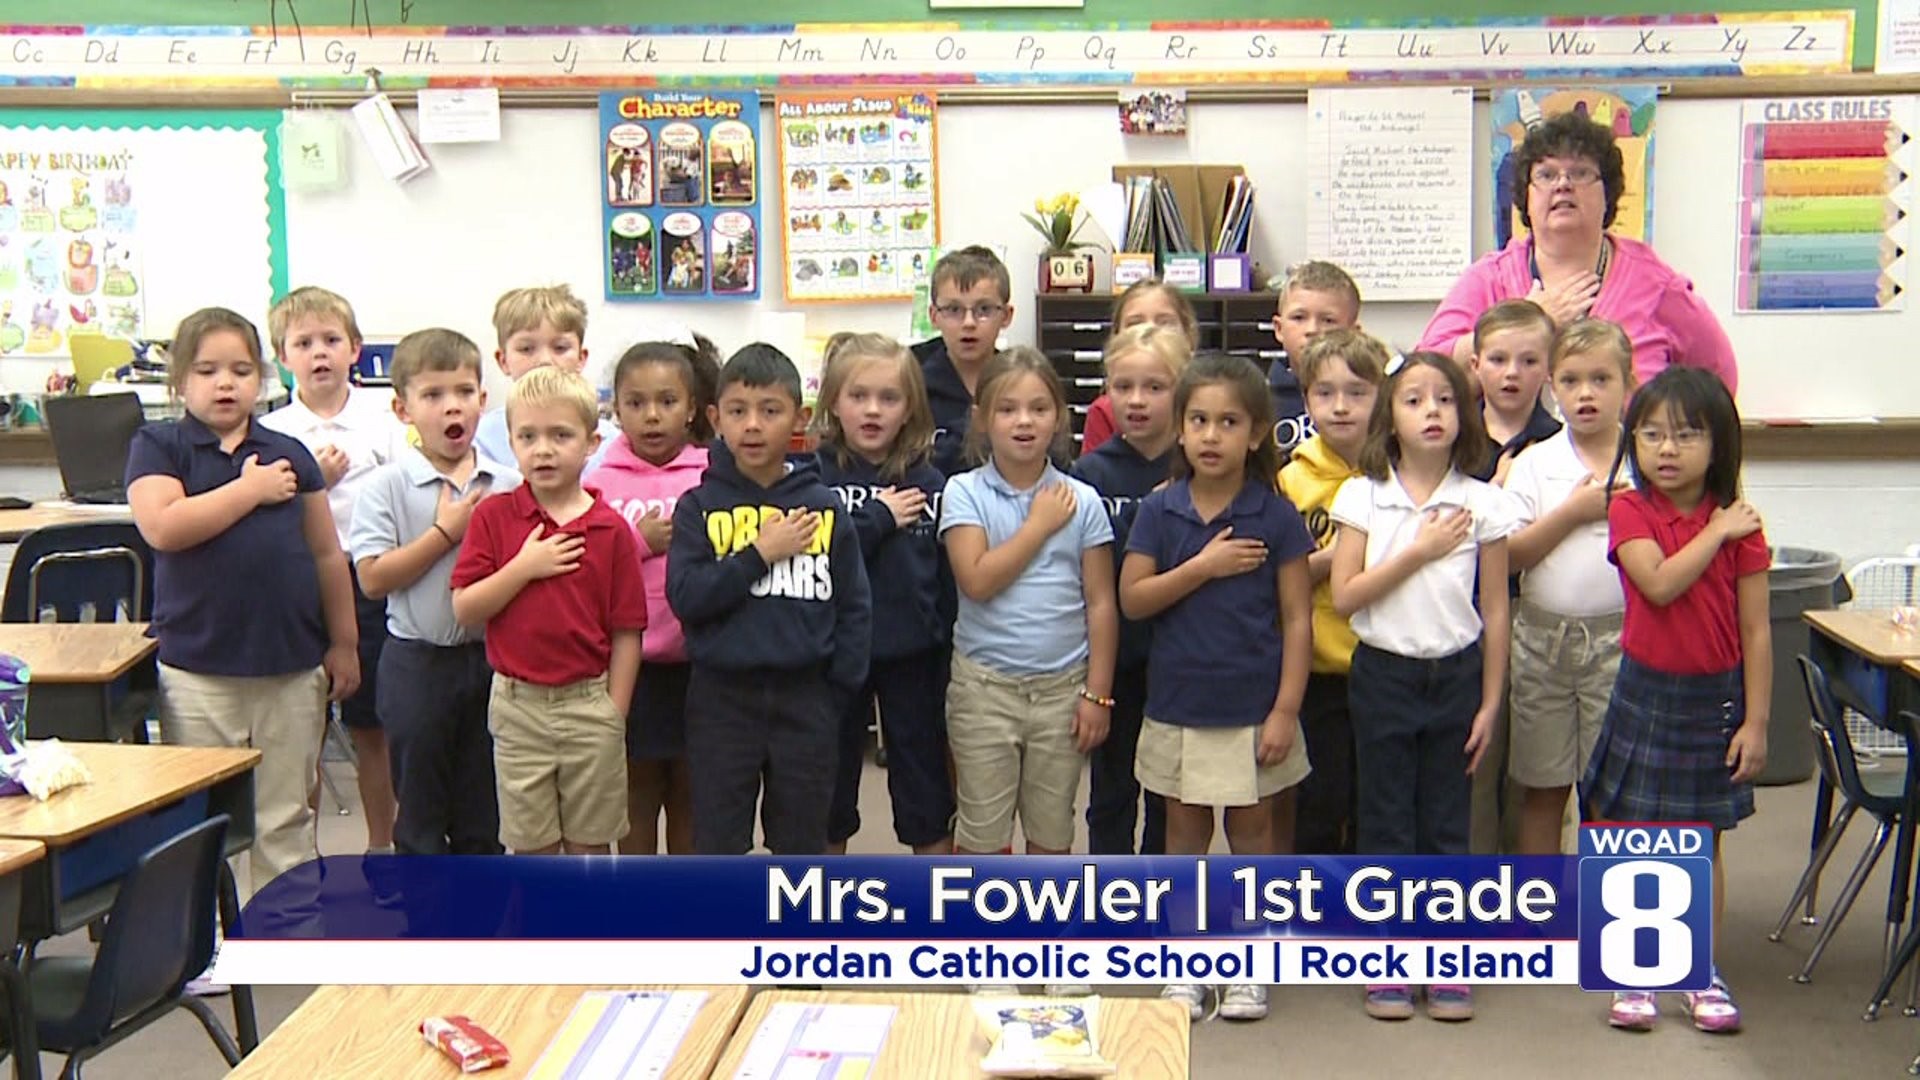 Mrs Fowler 1st grade - Jordan